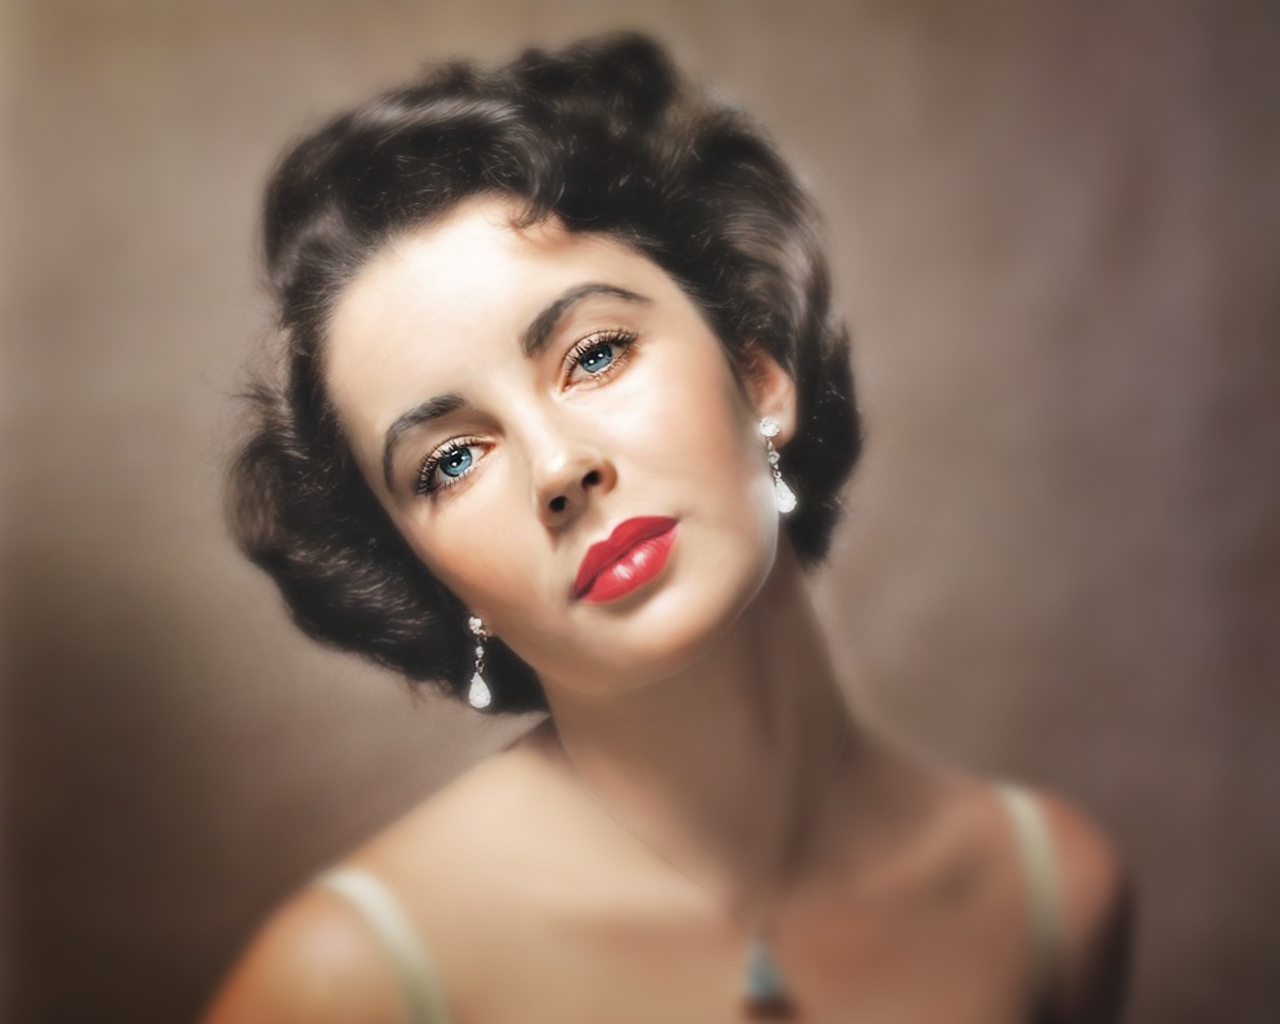 Elizabeth Taylor Blue Eyes for 1280 x 1024 resolution